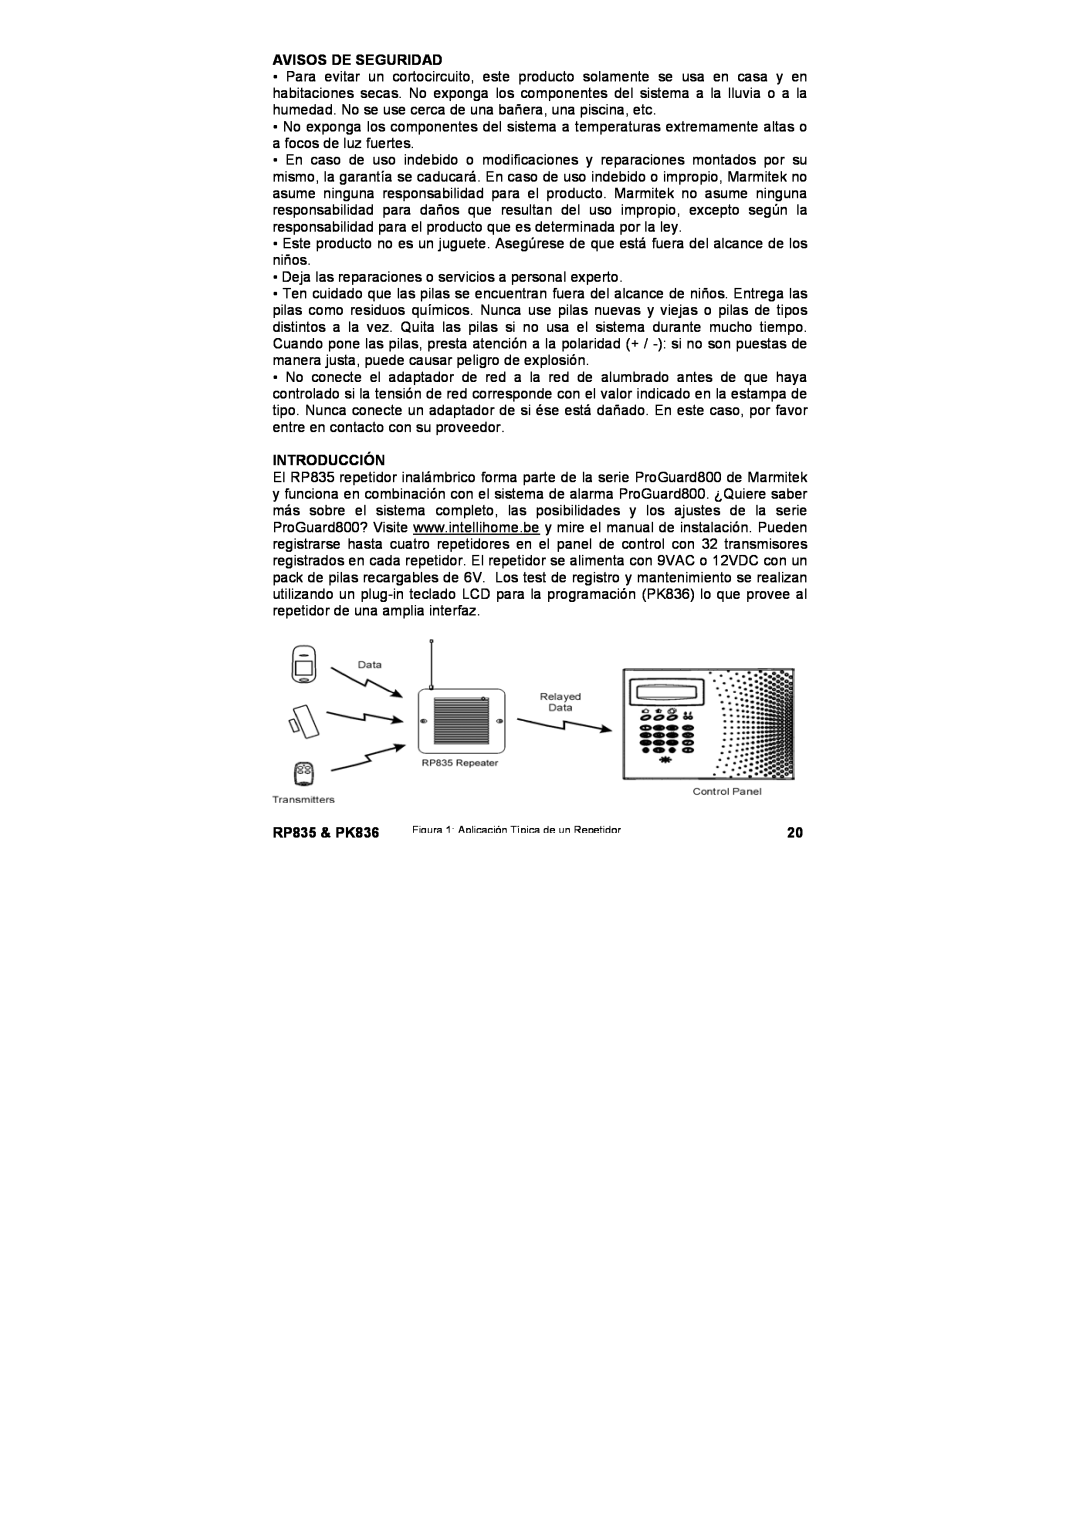 Marmitek user manual Avisos De Seguridad, Introducción, RP835 & PK836, Figura 1 Aplicación Típica de un Repetidor 